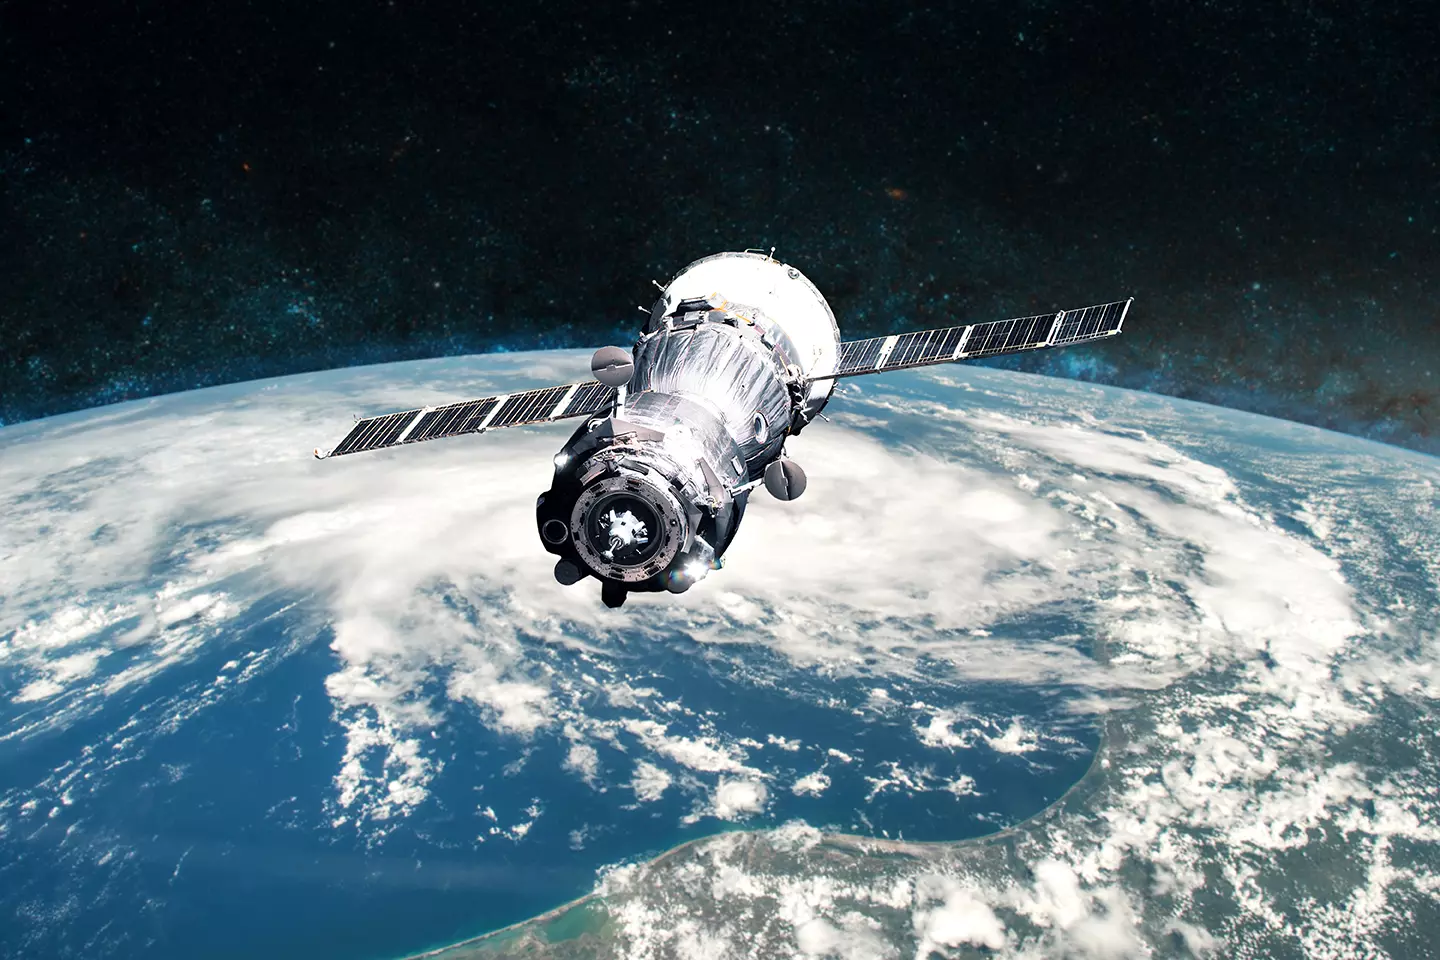 Satélite en el espacio representando que Amazon lanzarán miles de satélites al espacio para proveer internet